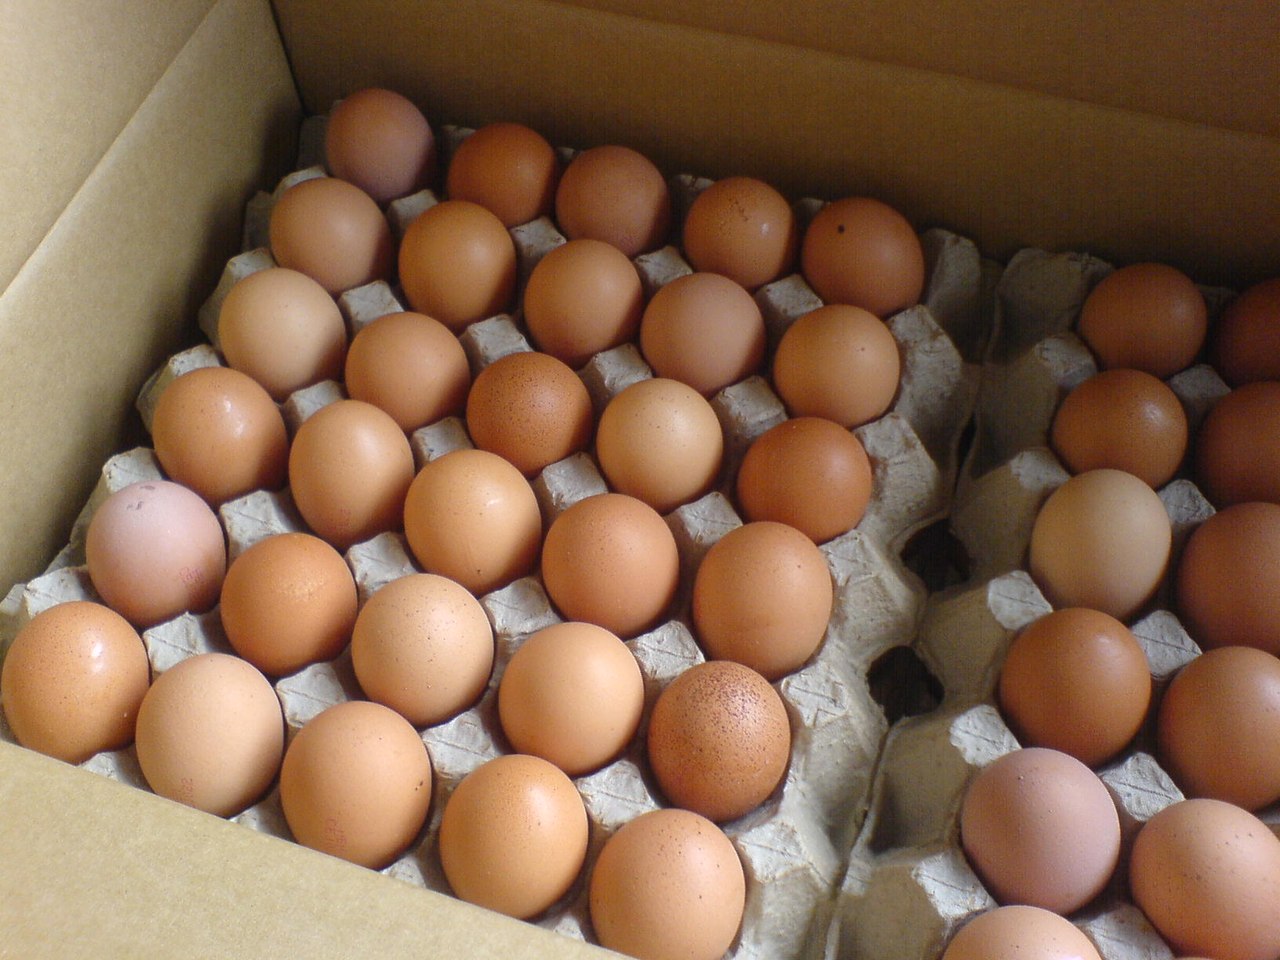 Предложение на поставку инкубационного яйца бройлера в августе